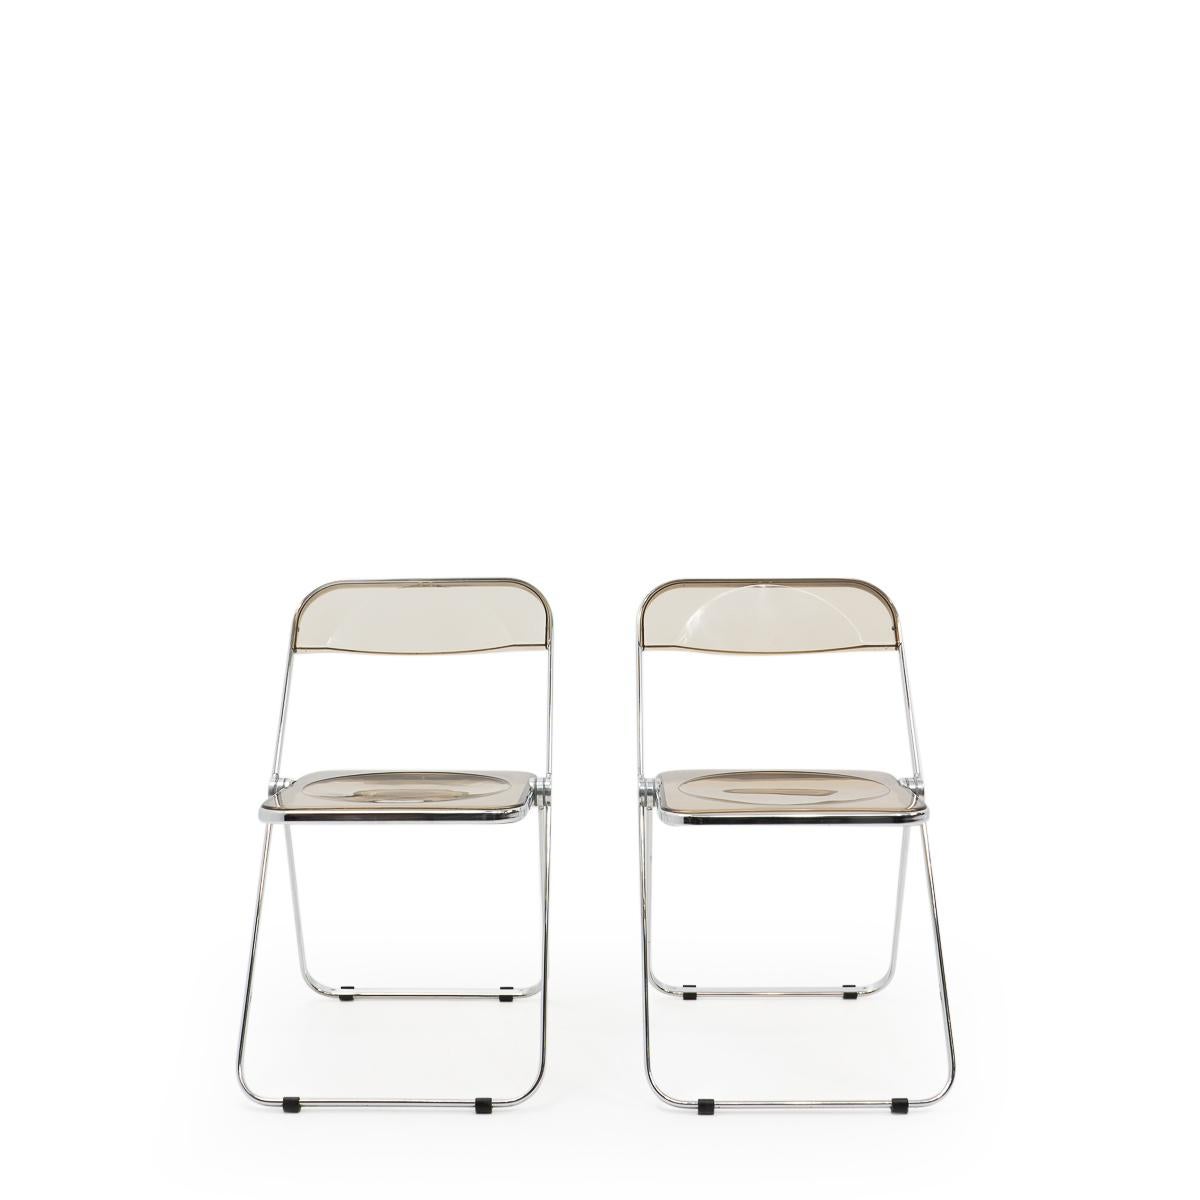 Chaises pliantes Plia produites par Castelli et conçues par Giancarlo Piretti (également connu pour les chaises longues Alky ou Plona).

Ces chaises pliantes emblématiques sont encore en très bon état, et très pratiques dans leur utilisation :